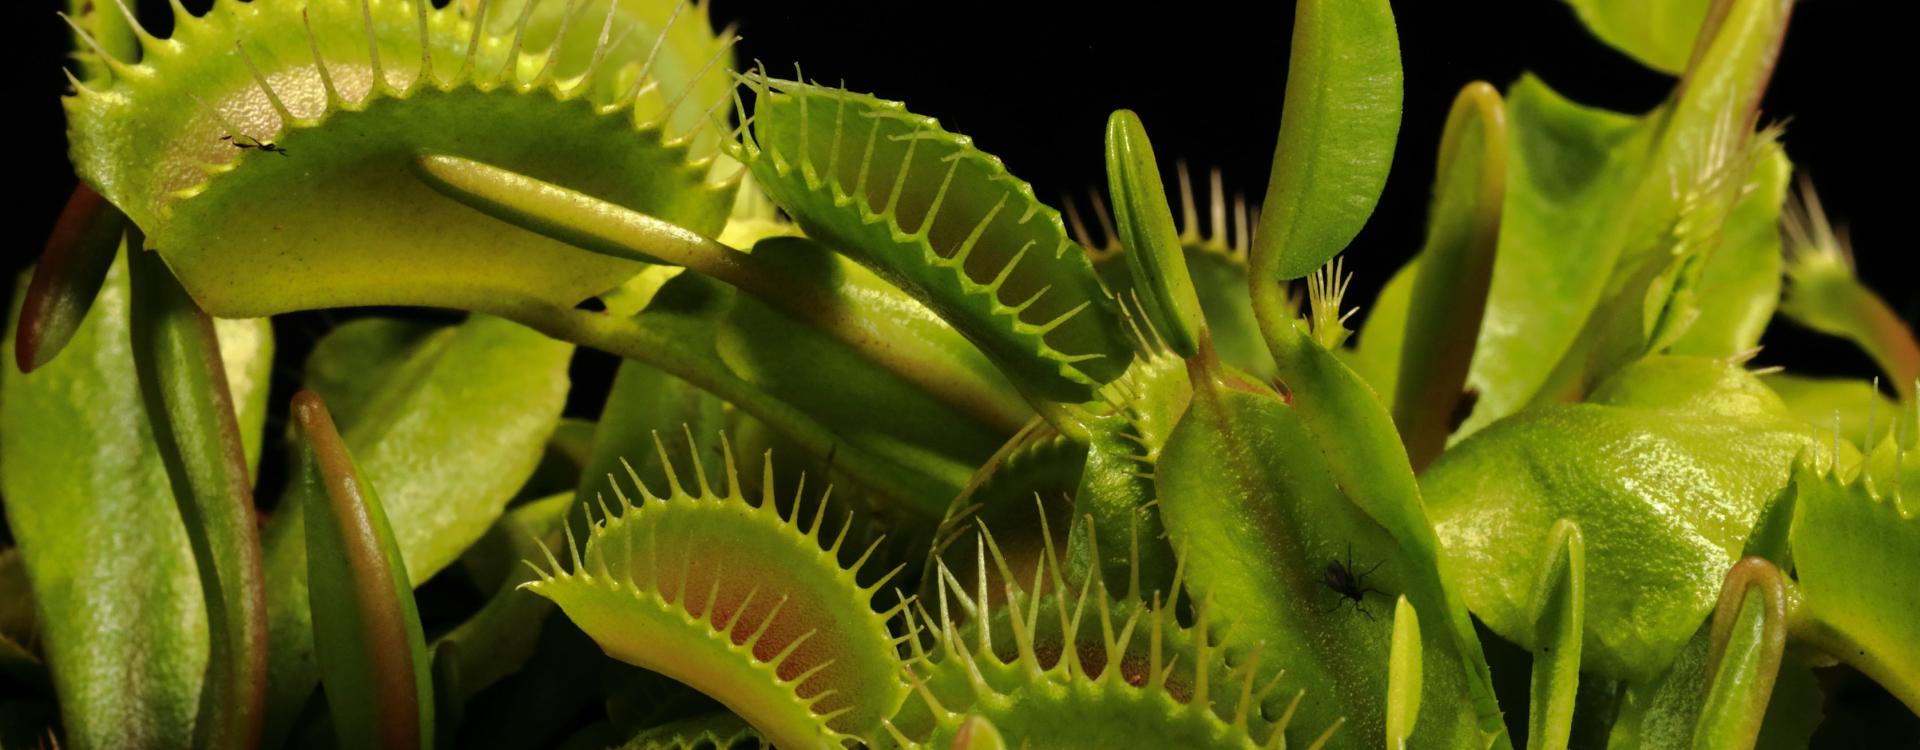 Carnivorous plants, venus flytrap, close-up